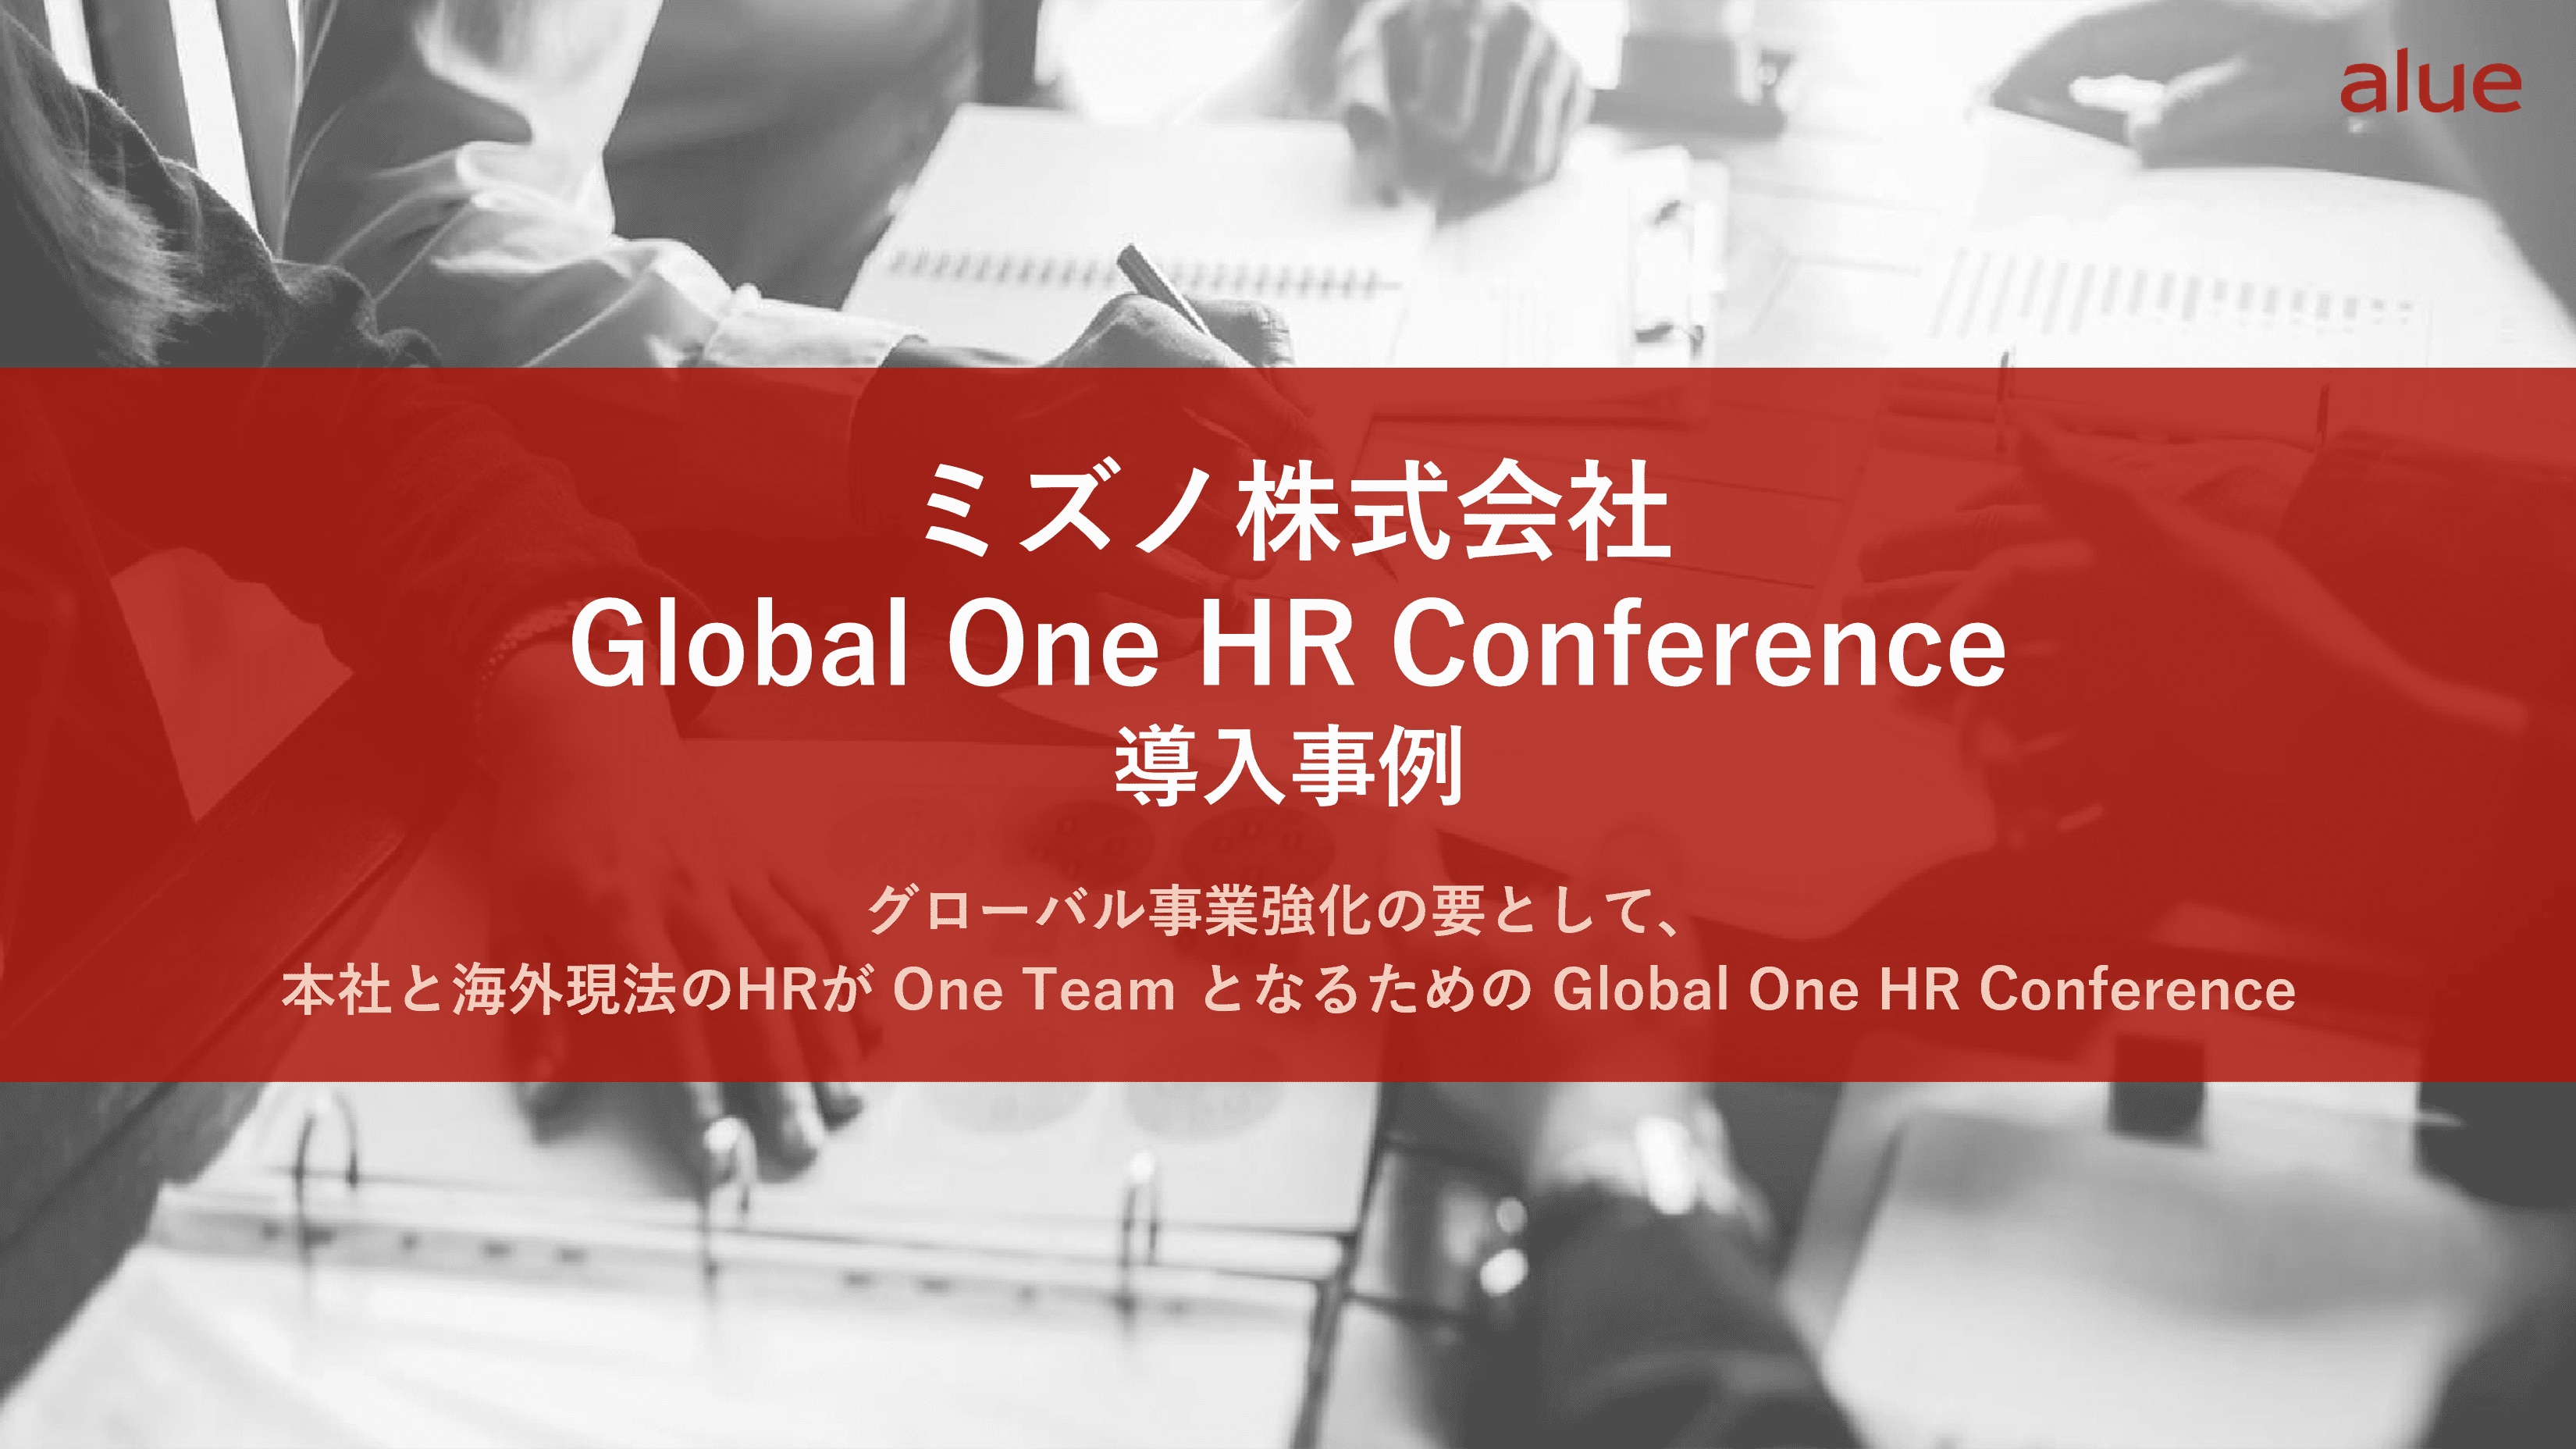 ミズノ株式会社Global One HR Conference導入事例